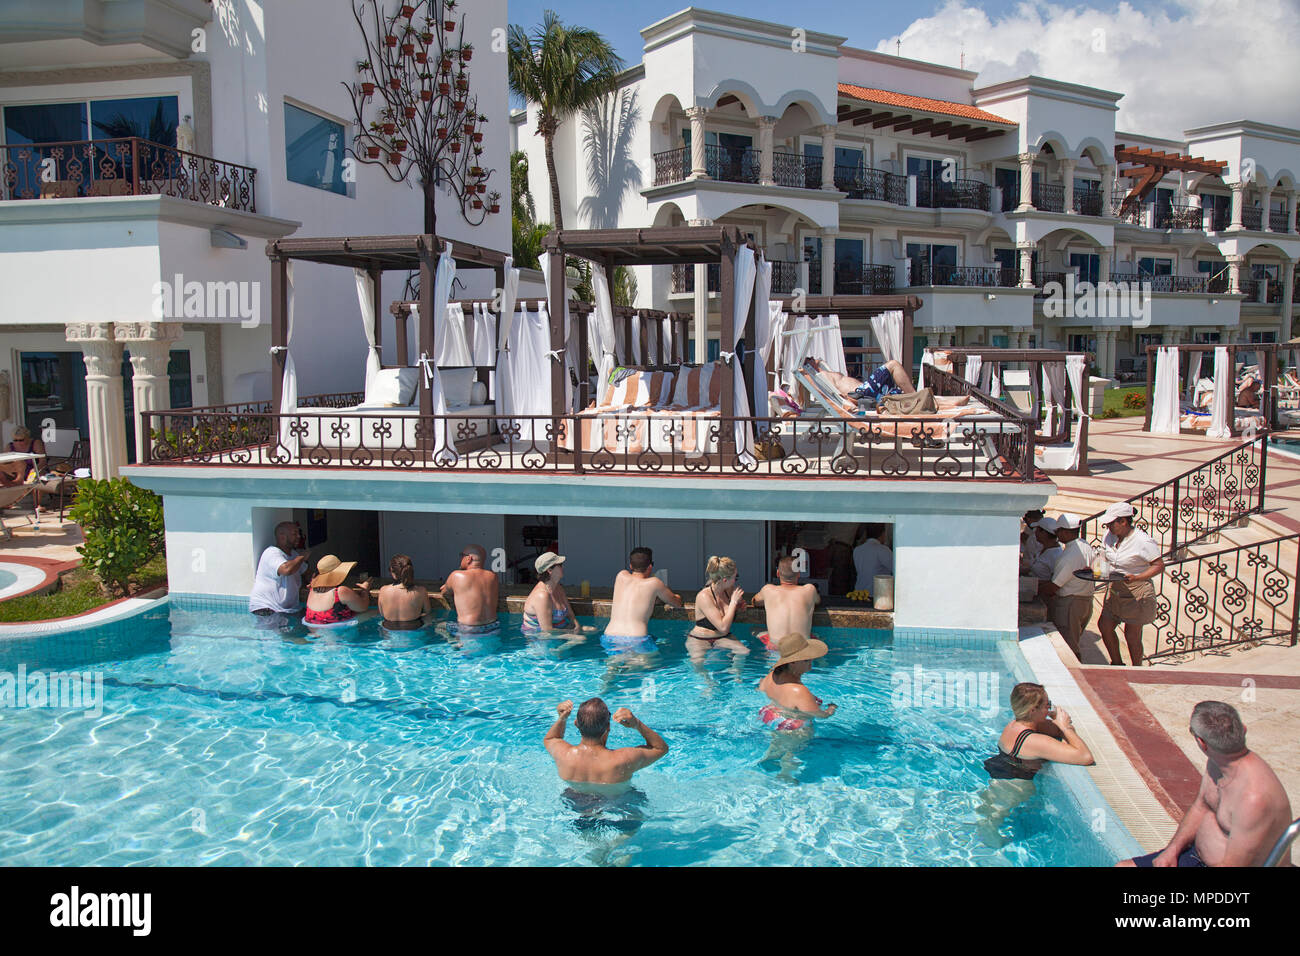 Les clients de l'hôtel au bord de la piscine, bar, The Royal Playa del Carmen resort hotel, Quintana Roo, Mexique Banque D'Images